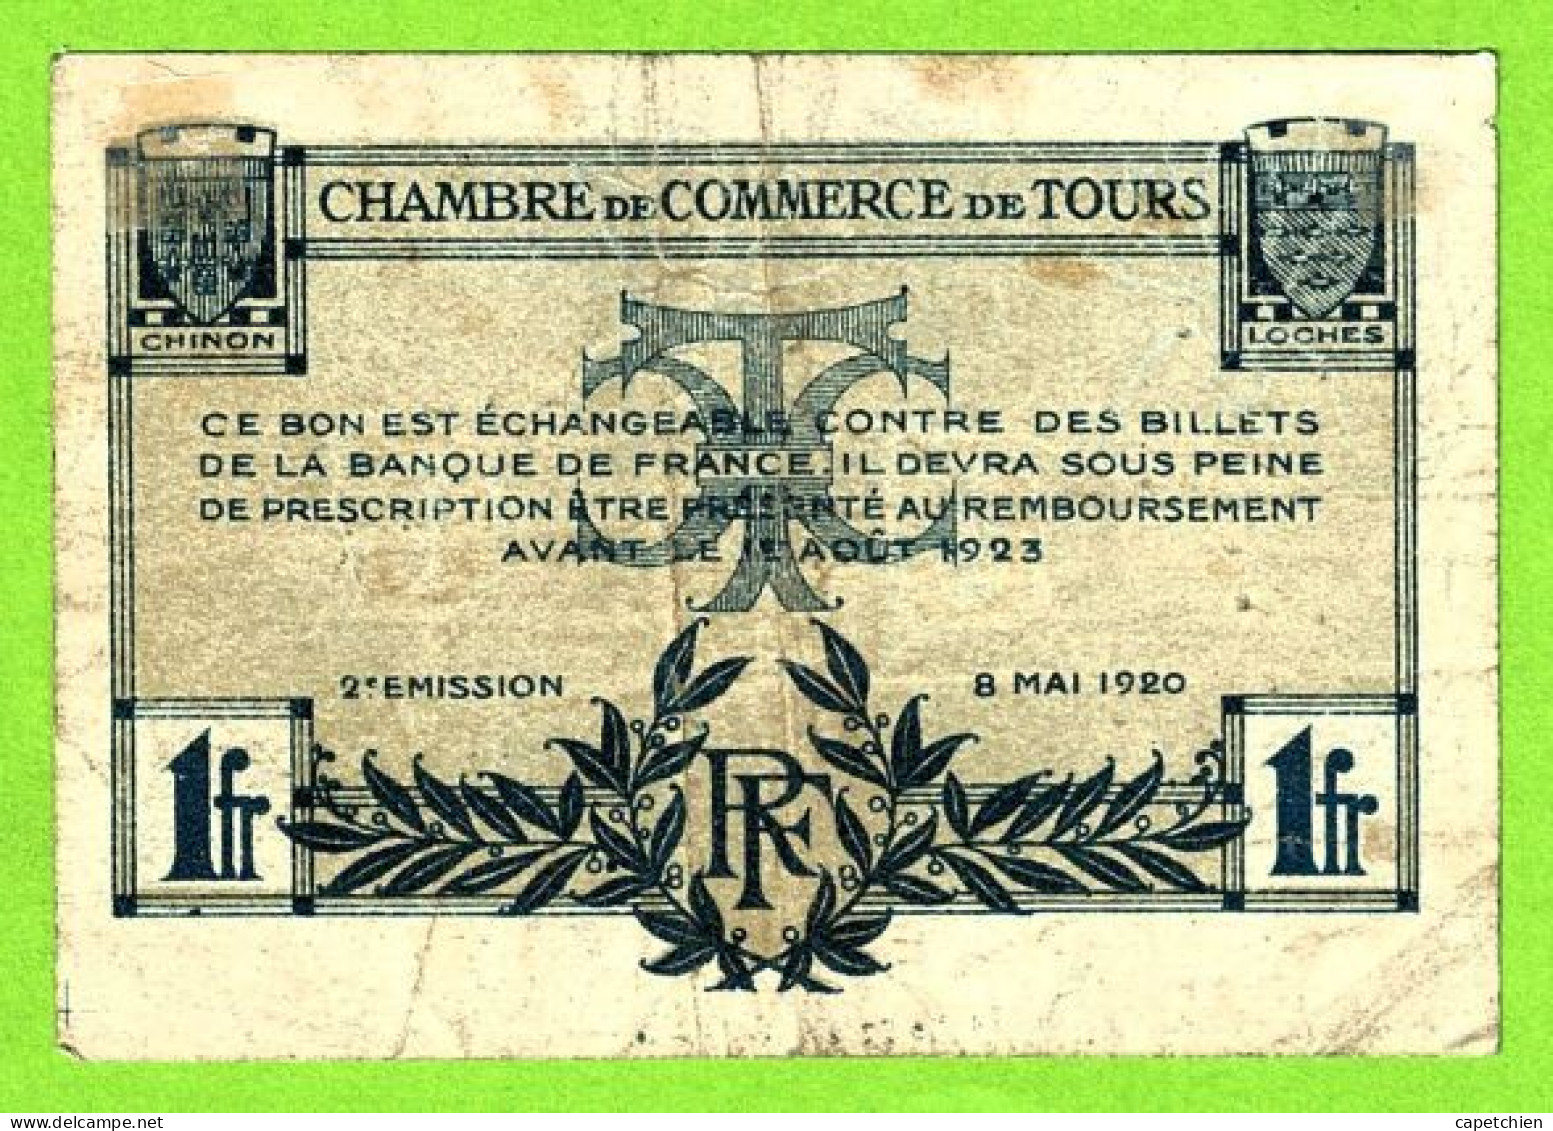 FRANCE / CHAMBRE De COMMERCE De TOURS / 1 FRANC / 8 MAI 1920 / 409024 / SERIE 2eme - Chambre De Commerce